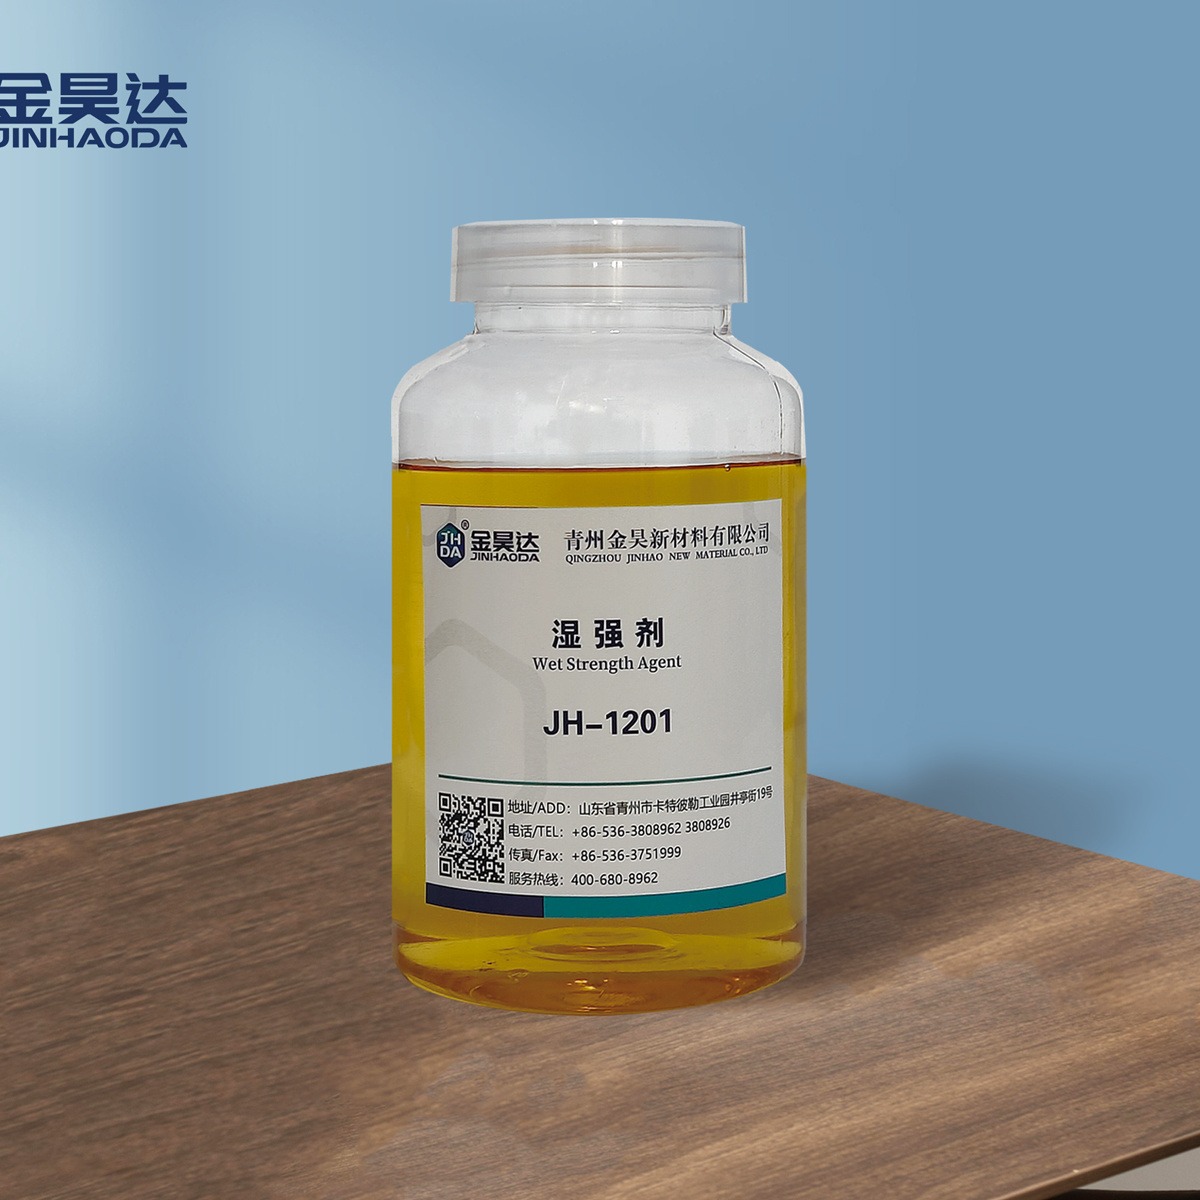 JH-1201阳离子湿强剂 适用范围广 湿强剂 专业生产厂家 质量保证 山东金昊